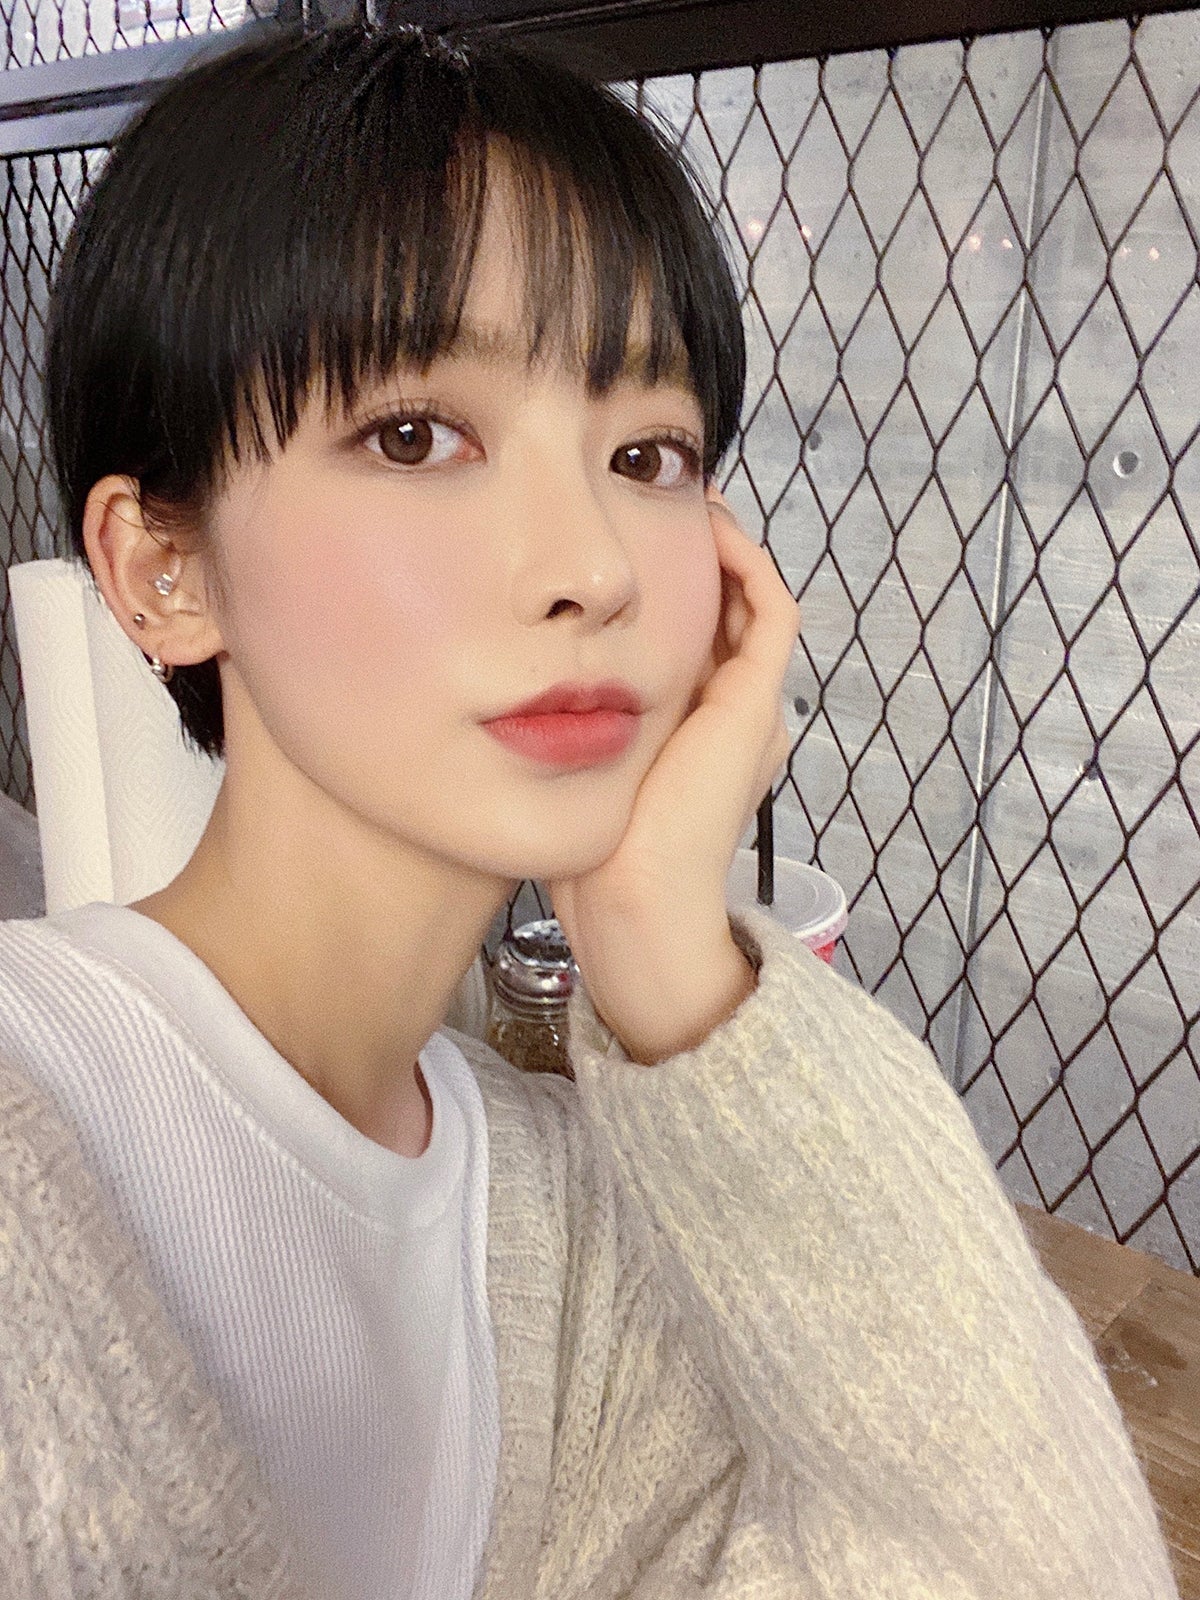 ボーイッシュショートの韓国人モデルhanjji ハンチ 最強ビジュアルでインスタフォロワー急増 昨年12月から日本在住 素顔と美の秘訣に迫るインタビュー モデルプレス